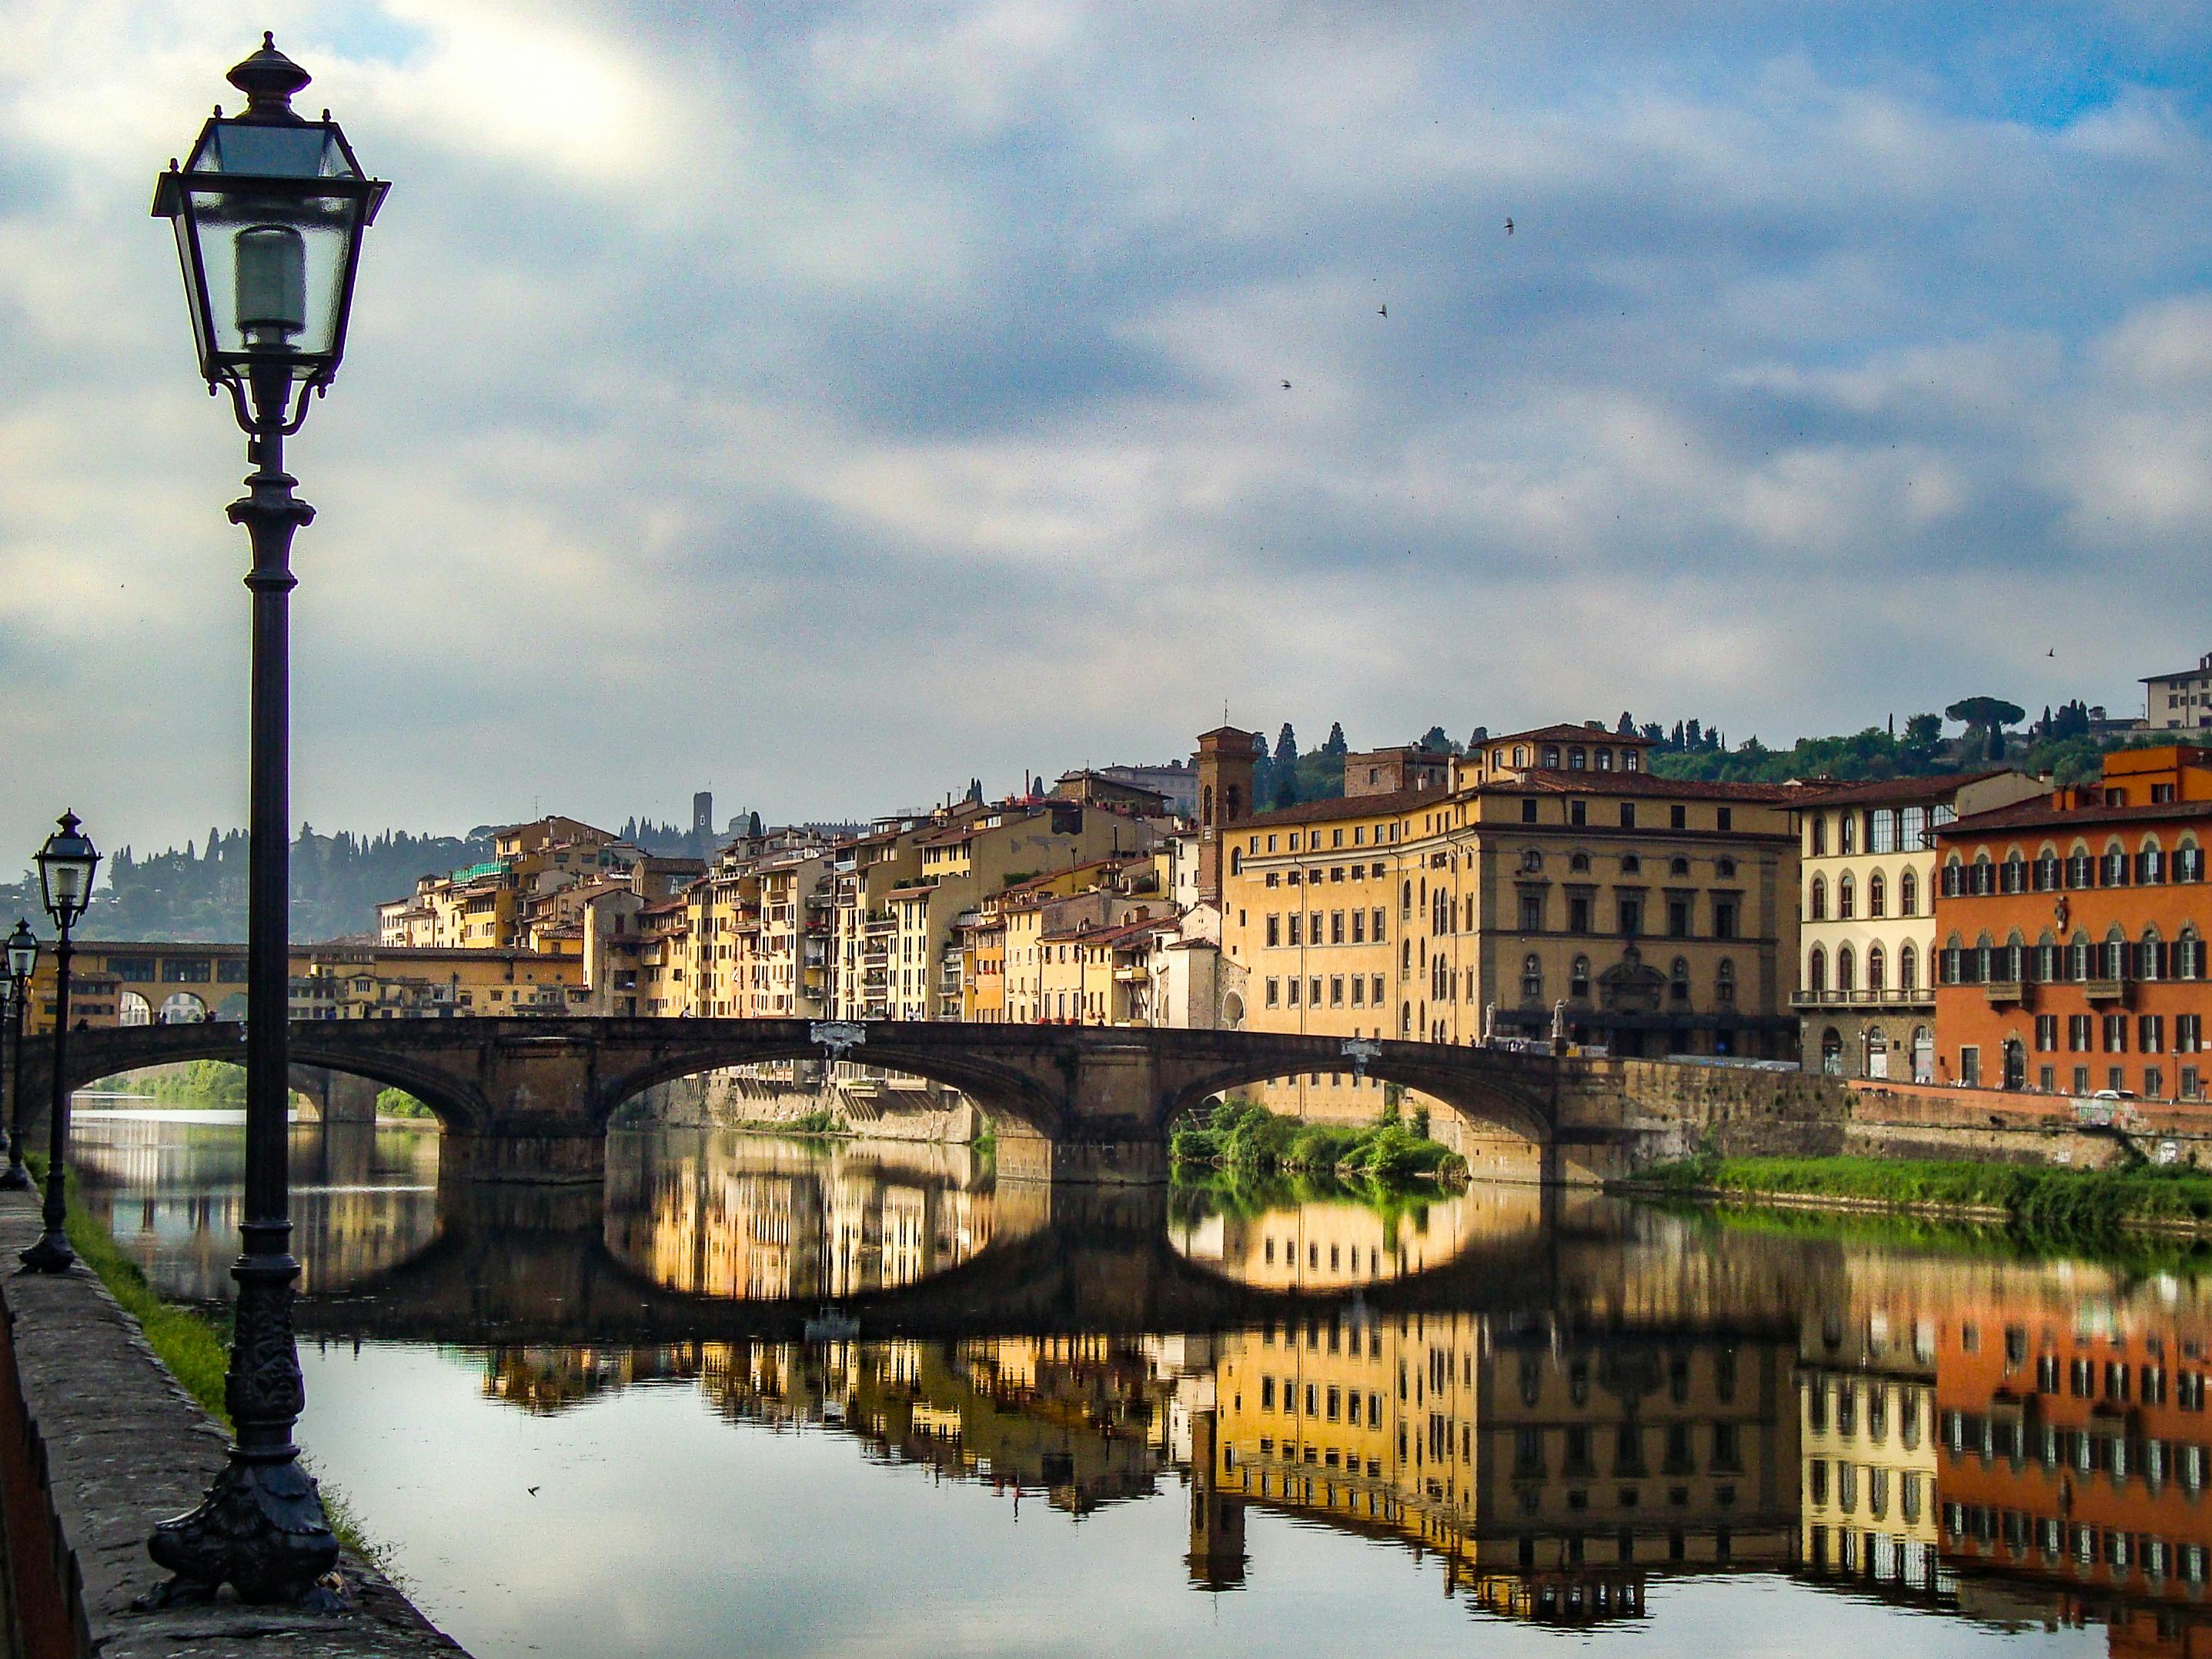 6. Les quartiers pittoresques de Florence : flâner dans les ruelles authentiques